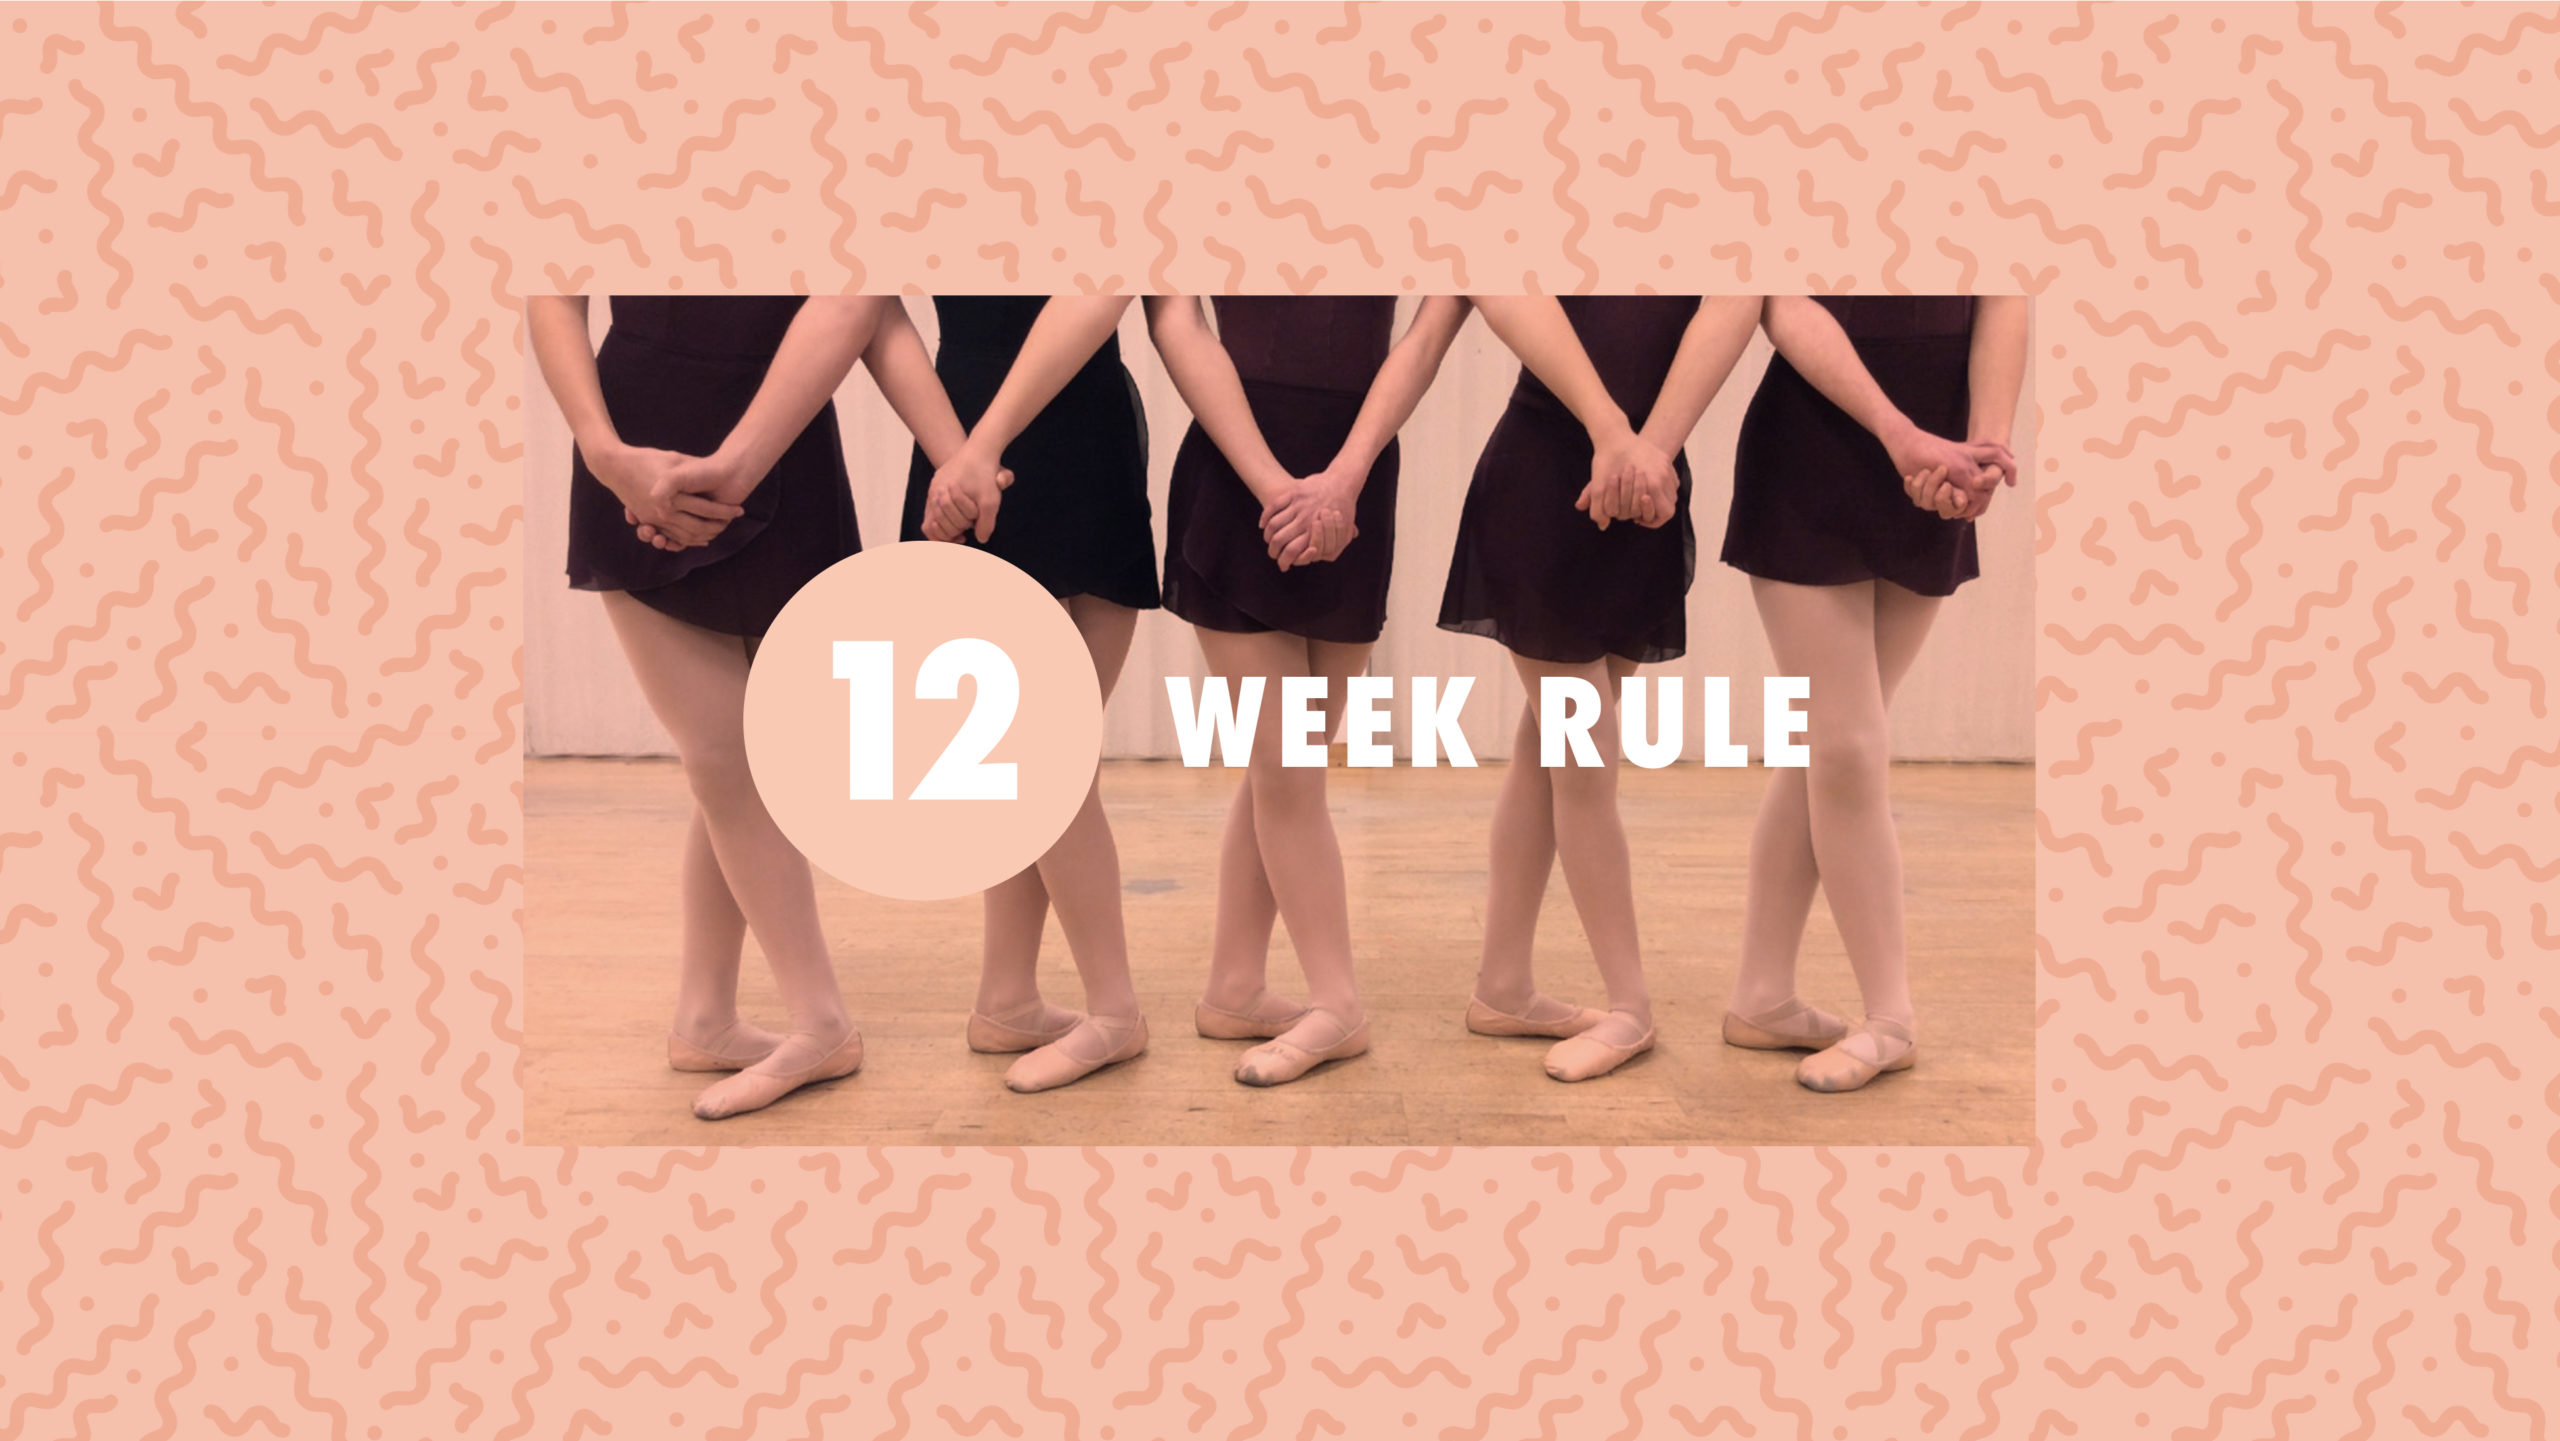 The Twelve Week Rule